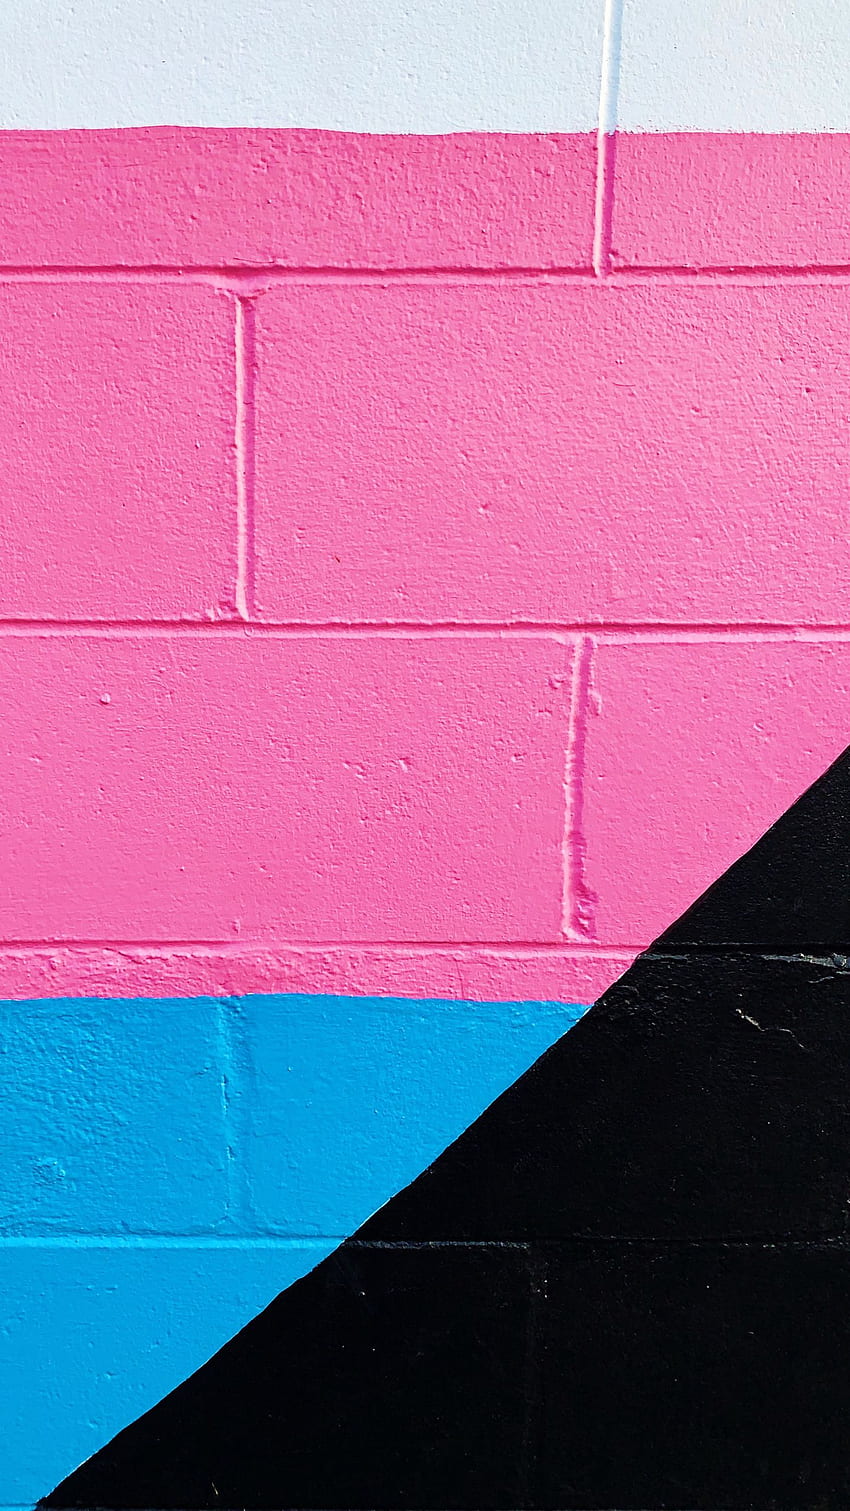 pared, pintura, multicolor, ladrillo, rosa, azul, negro, blanco q samsung galaxy s6, s7, edge, note, lg g4 background fondo de pantalla del teléfono